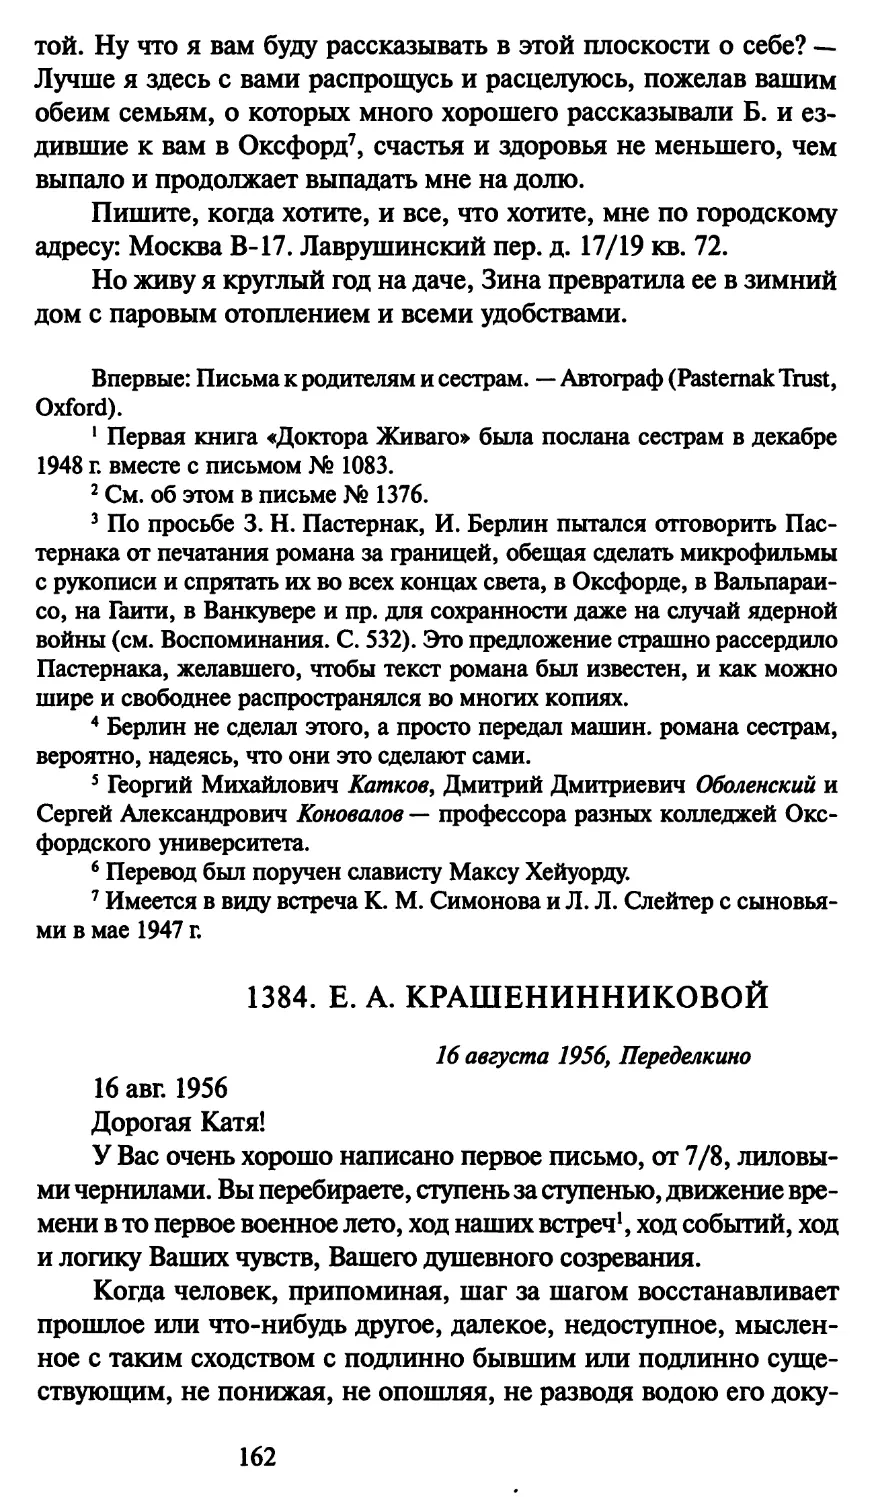 1384. Е. А. Крашенинниковой 16 августа 1956